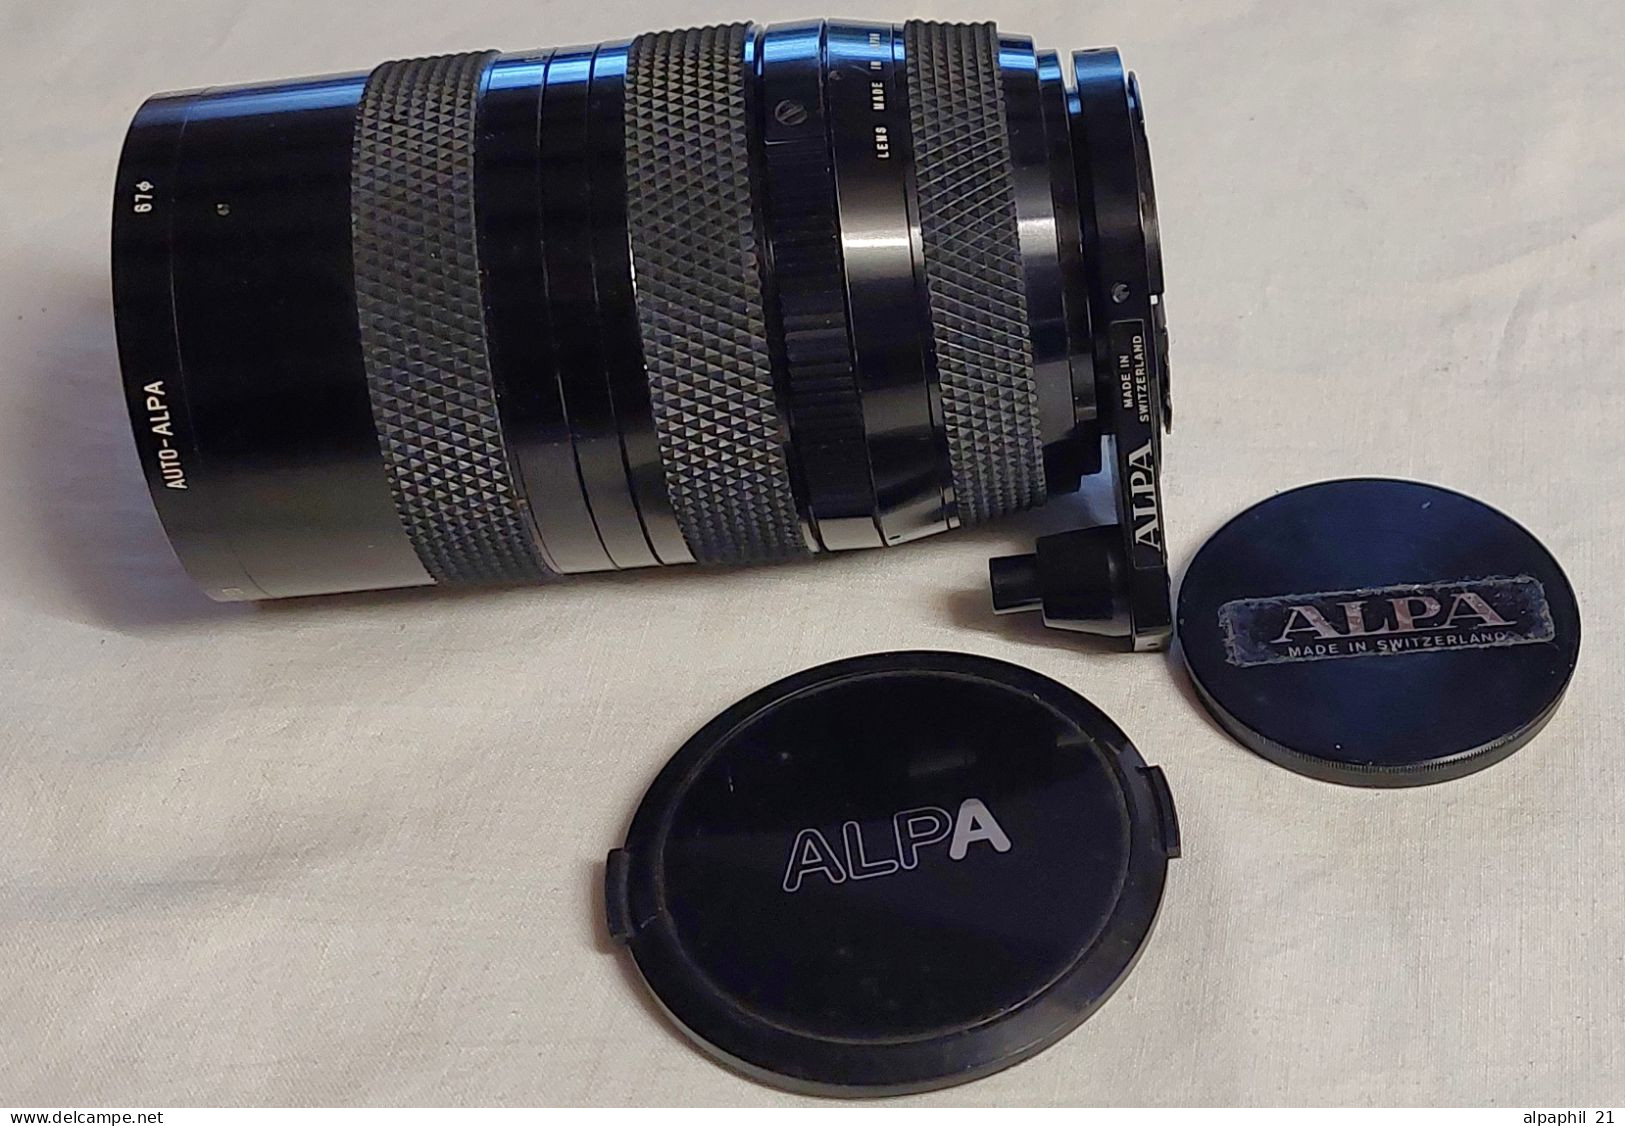 Auto-Alpa Zoom Lens Ø 42 Mm 1:3.5/40~105 With AUTOBAG - Material Y Accesorios